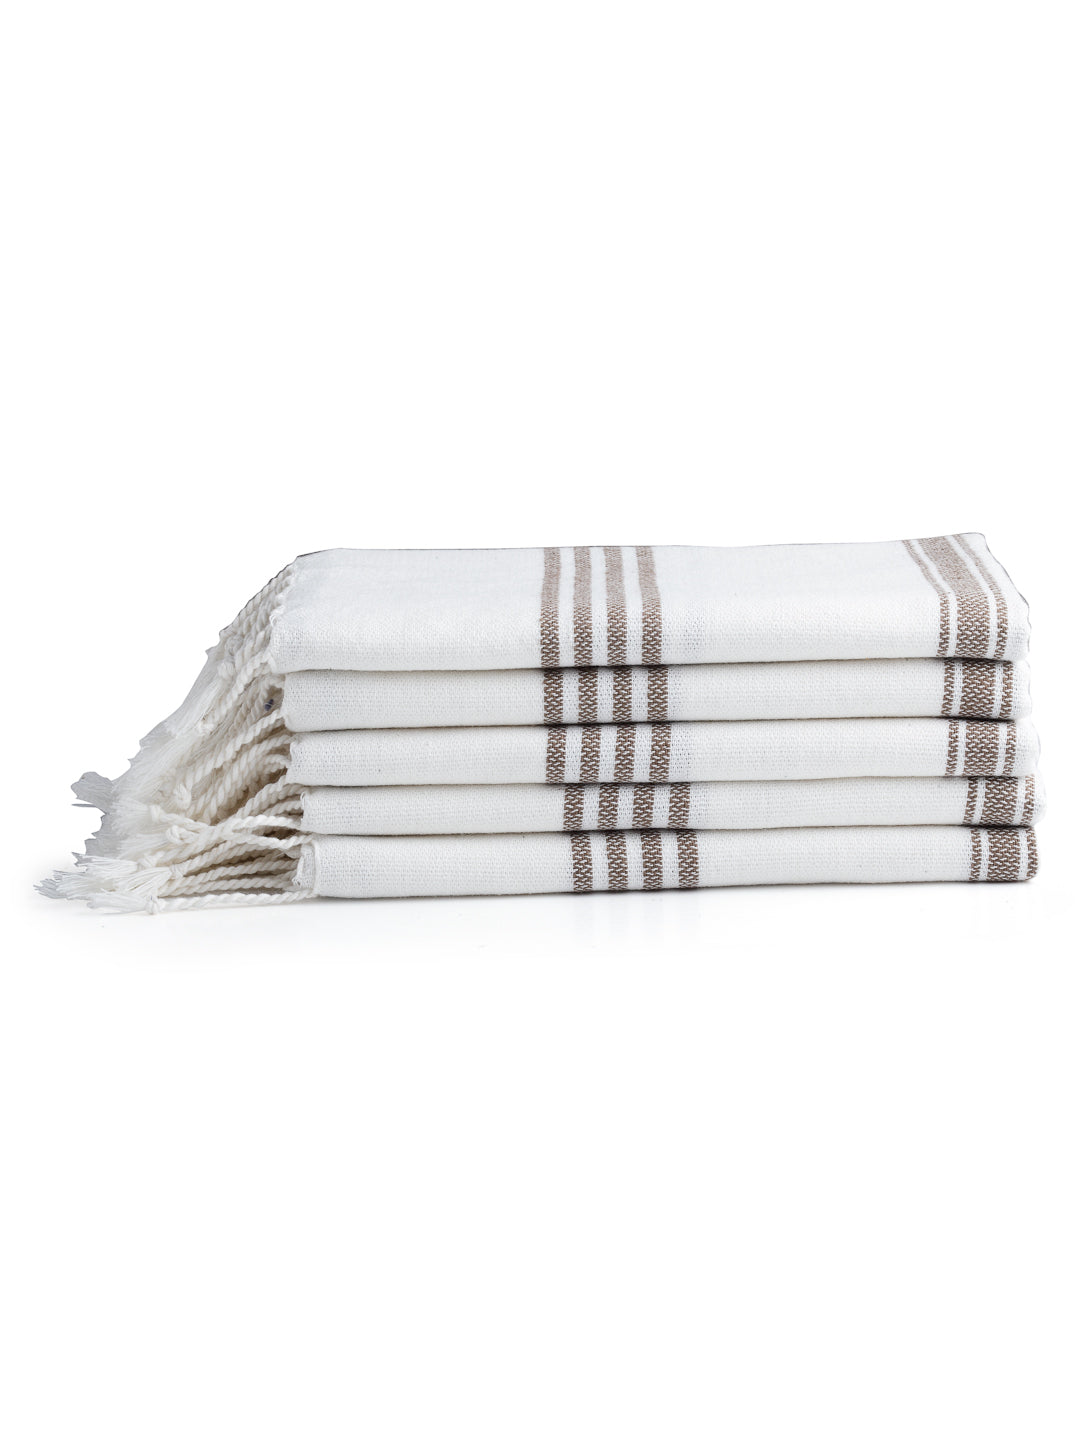 Arrabi Brown Solid Handwoven Cotton Hand Towel (Set of 5) (90 X 35 cm)